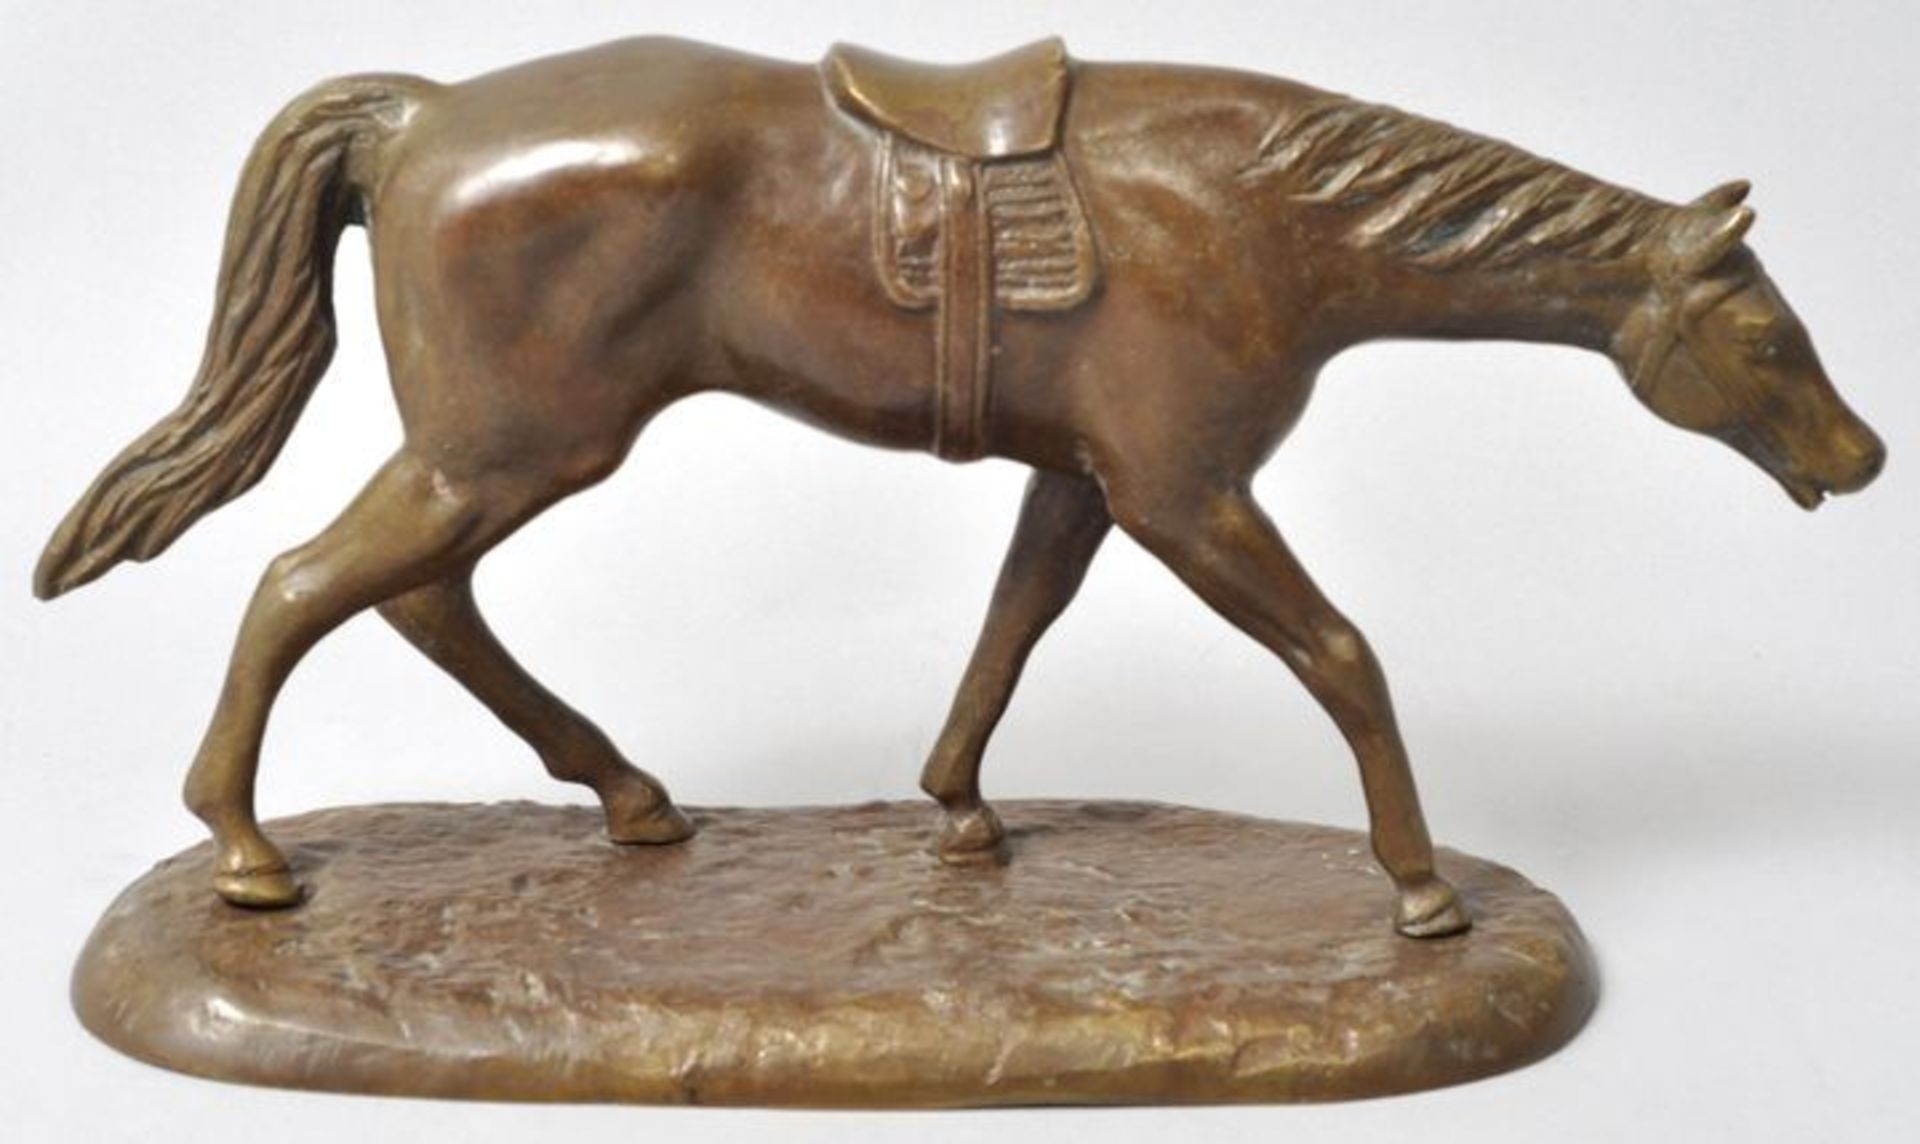 Unbekannt, Anf. 20. Jh. Rennpferd, gehend. Bronze, patiniert, H. 14,5 cm